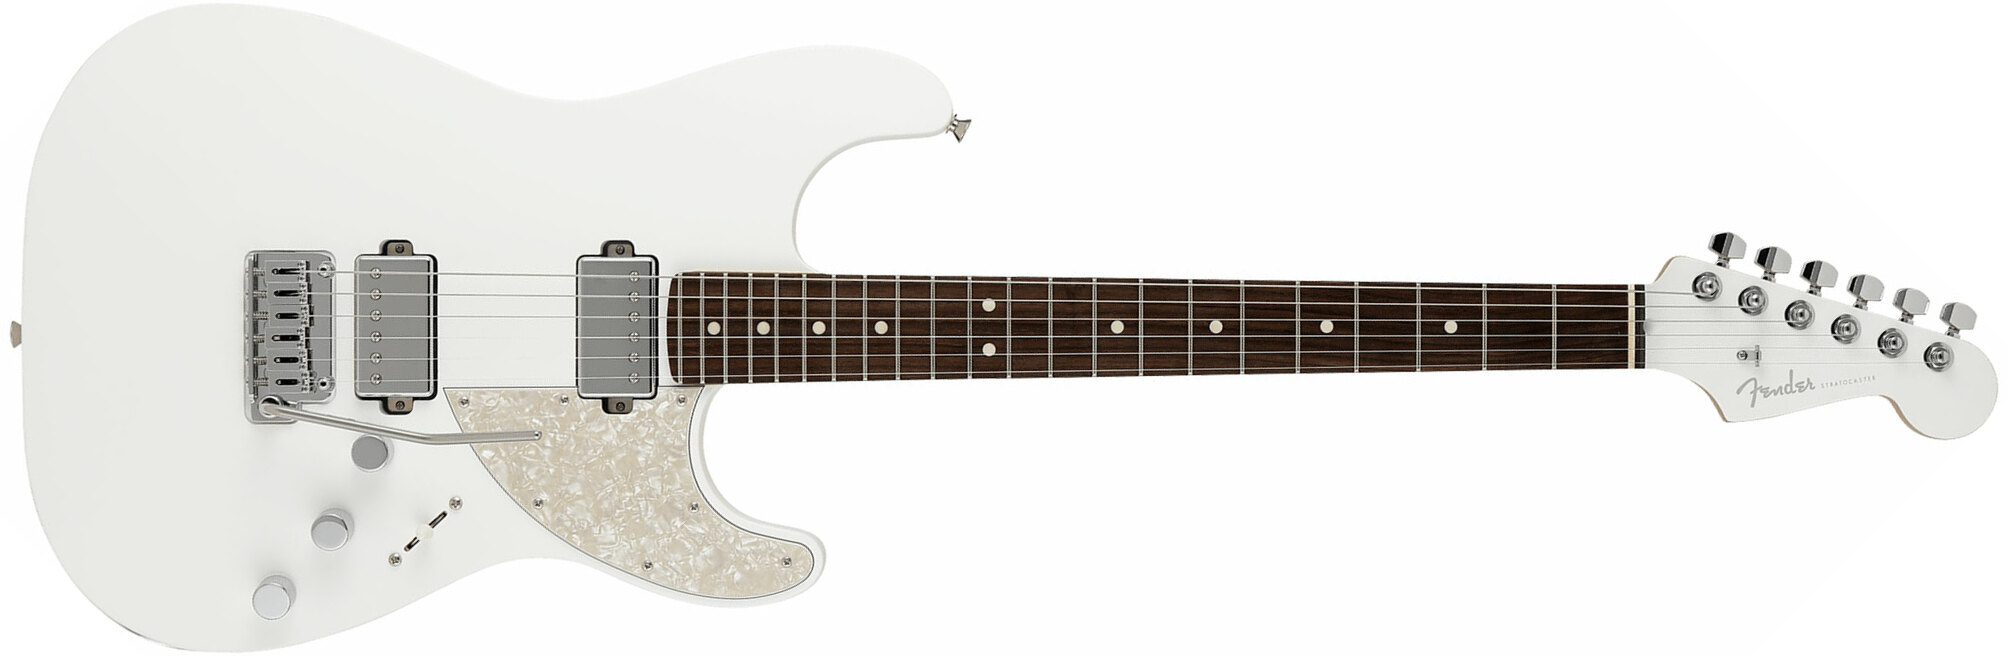 Fender Strat Elemental Mij Jap 2h Trem Rw - Nimbus White - Str shape electric guitar - Main picture